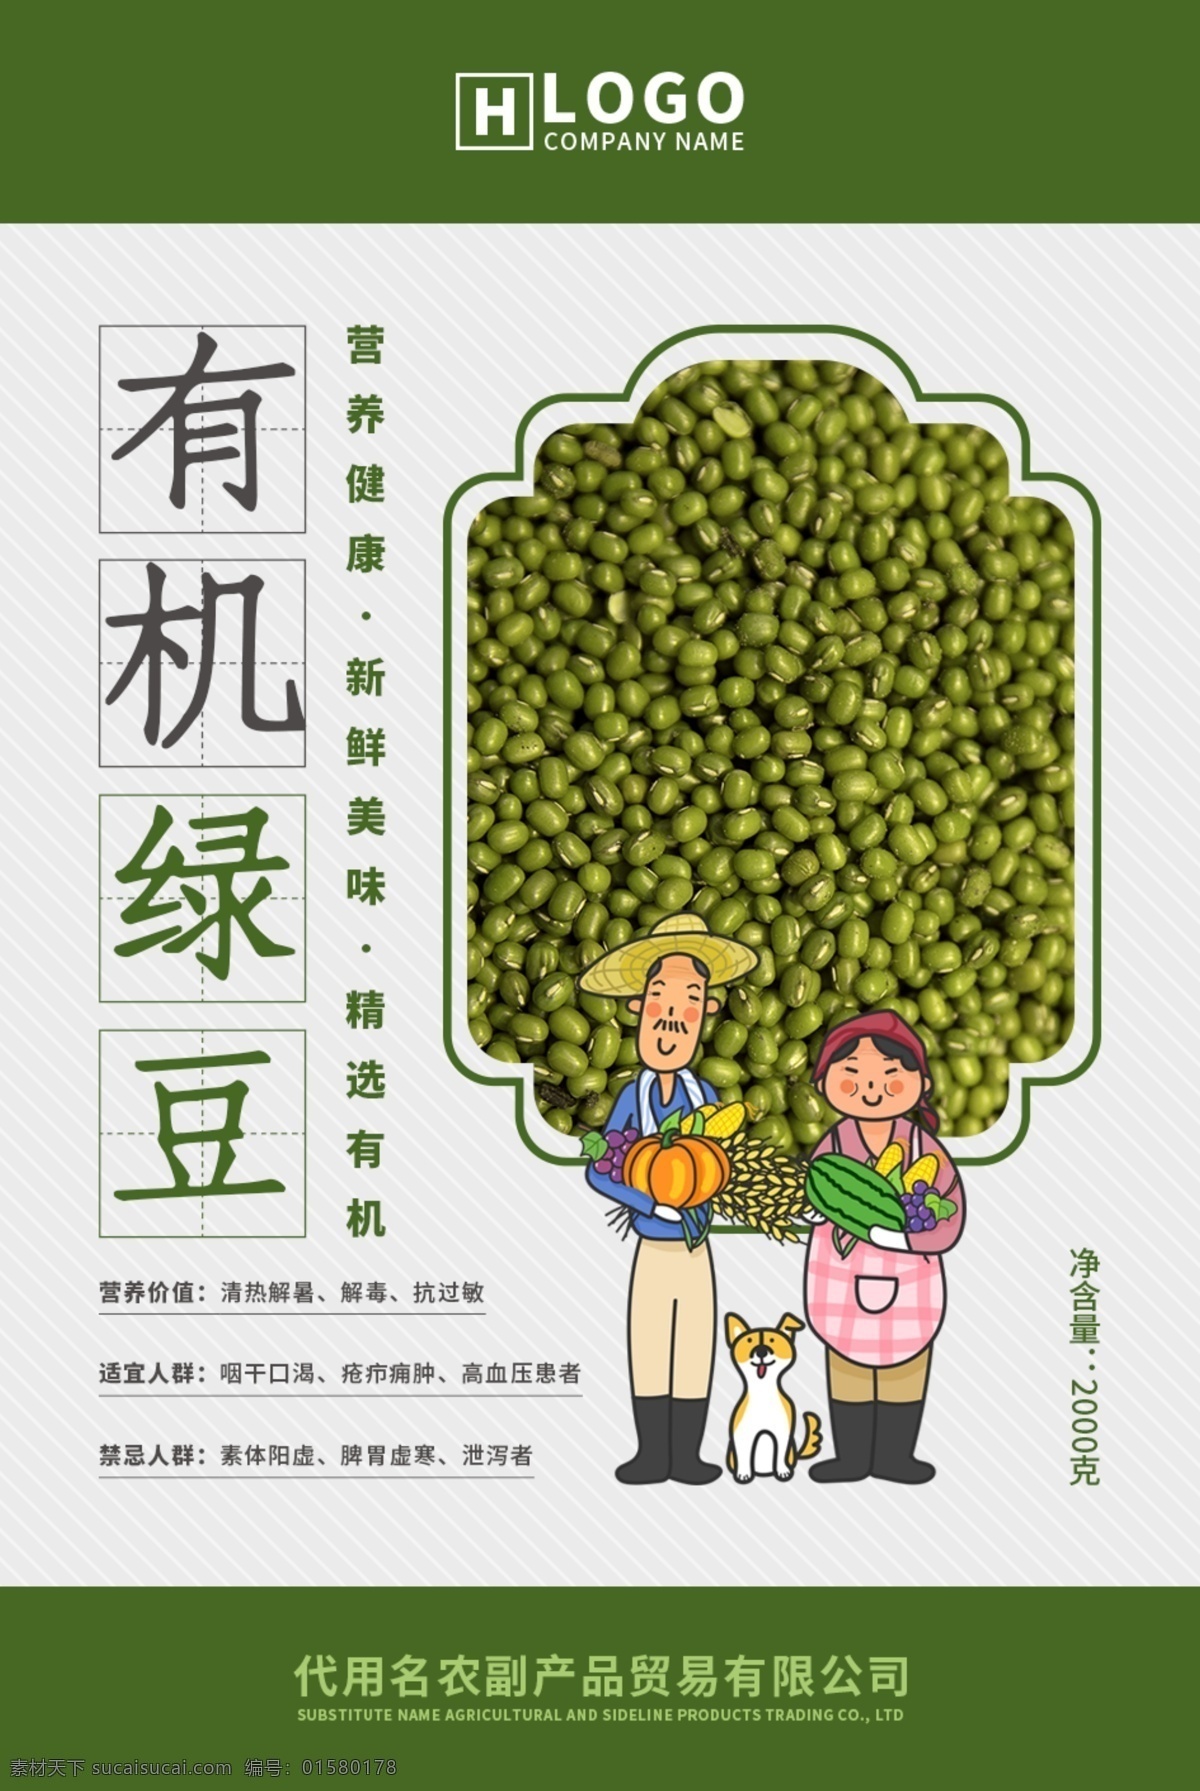 有机 绿豆 海报 杂粮 有机食品 农副产品 有机绿豆 粮食 标签 瓶贴 产品标签 农产品 宣传海报